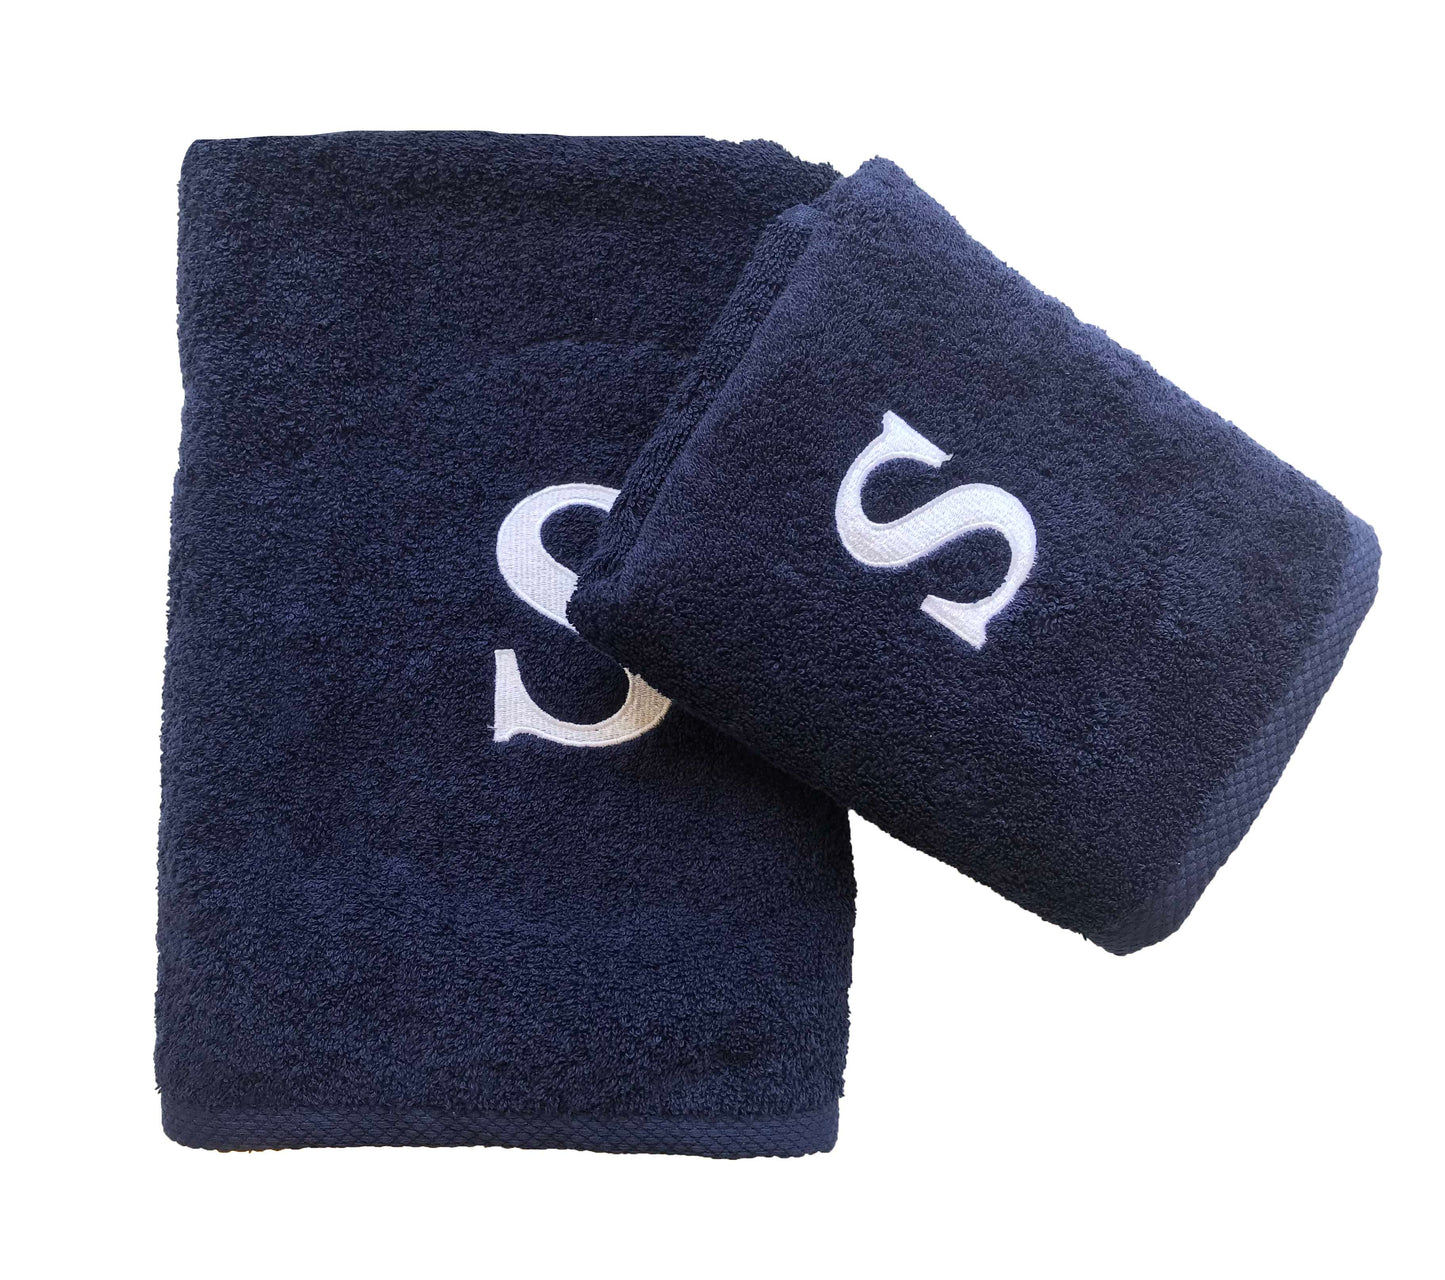 Premium Handtuch -  Mit edler Stickerei Buchstabe "S" - Vielseitig, Nachhaltig, Saugstark & Schnelltrocknend - 100% Baumwolle LMS-6642 Marinenblau